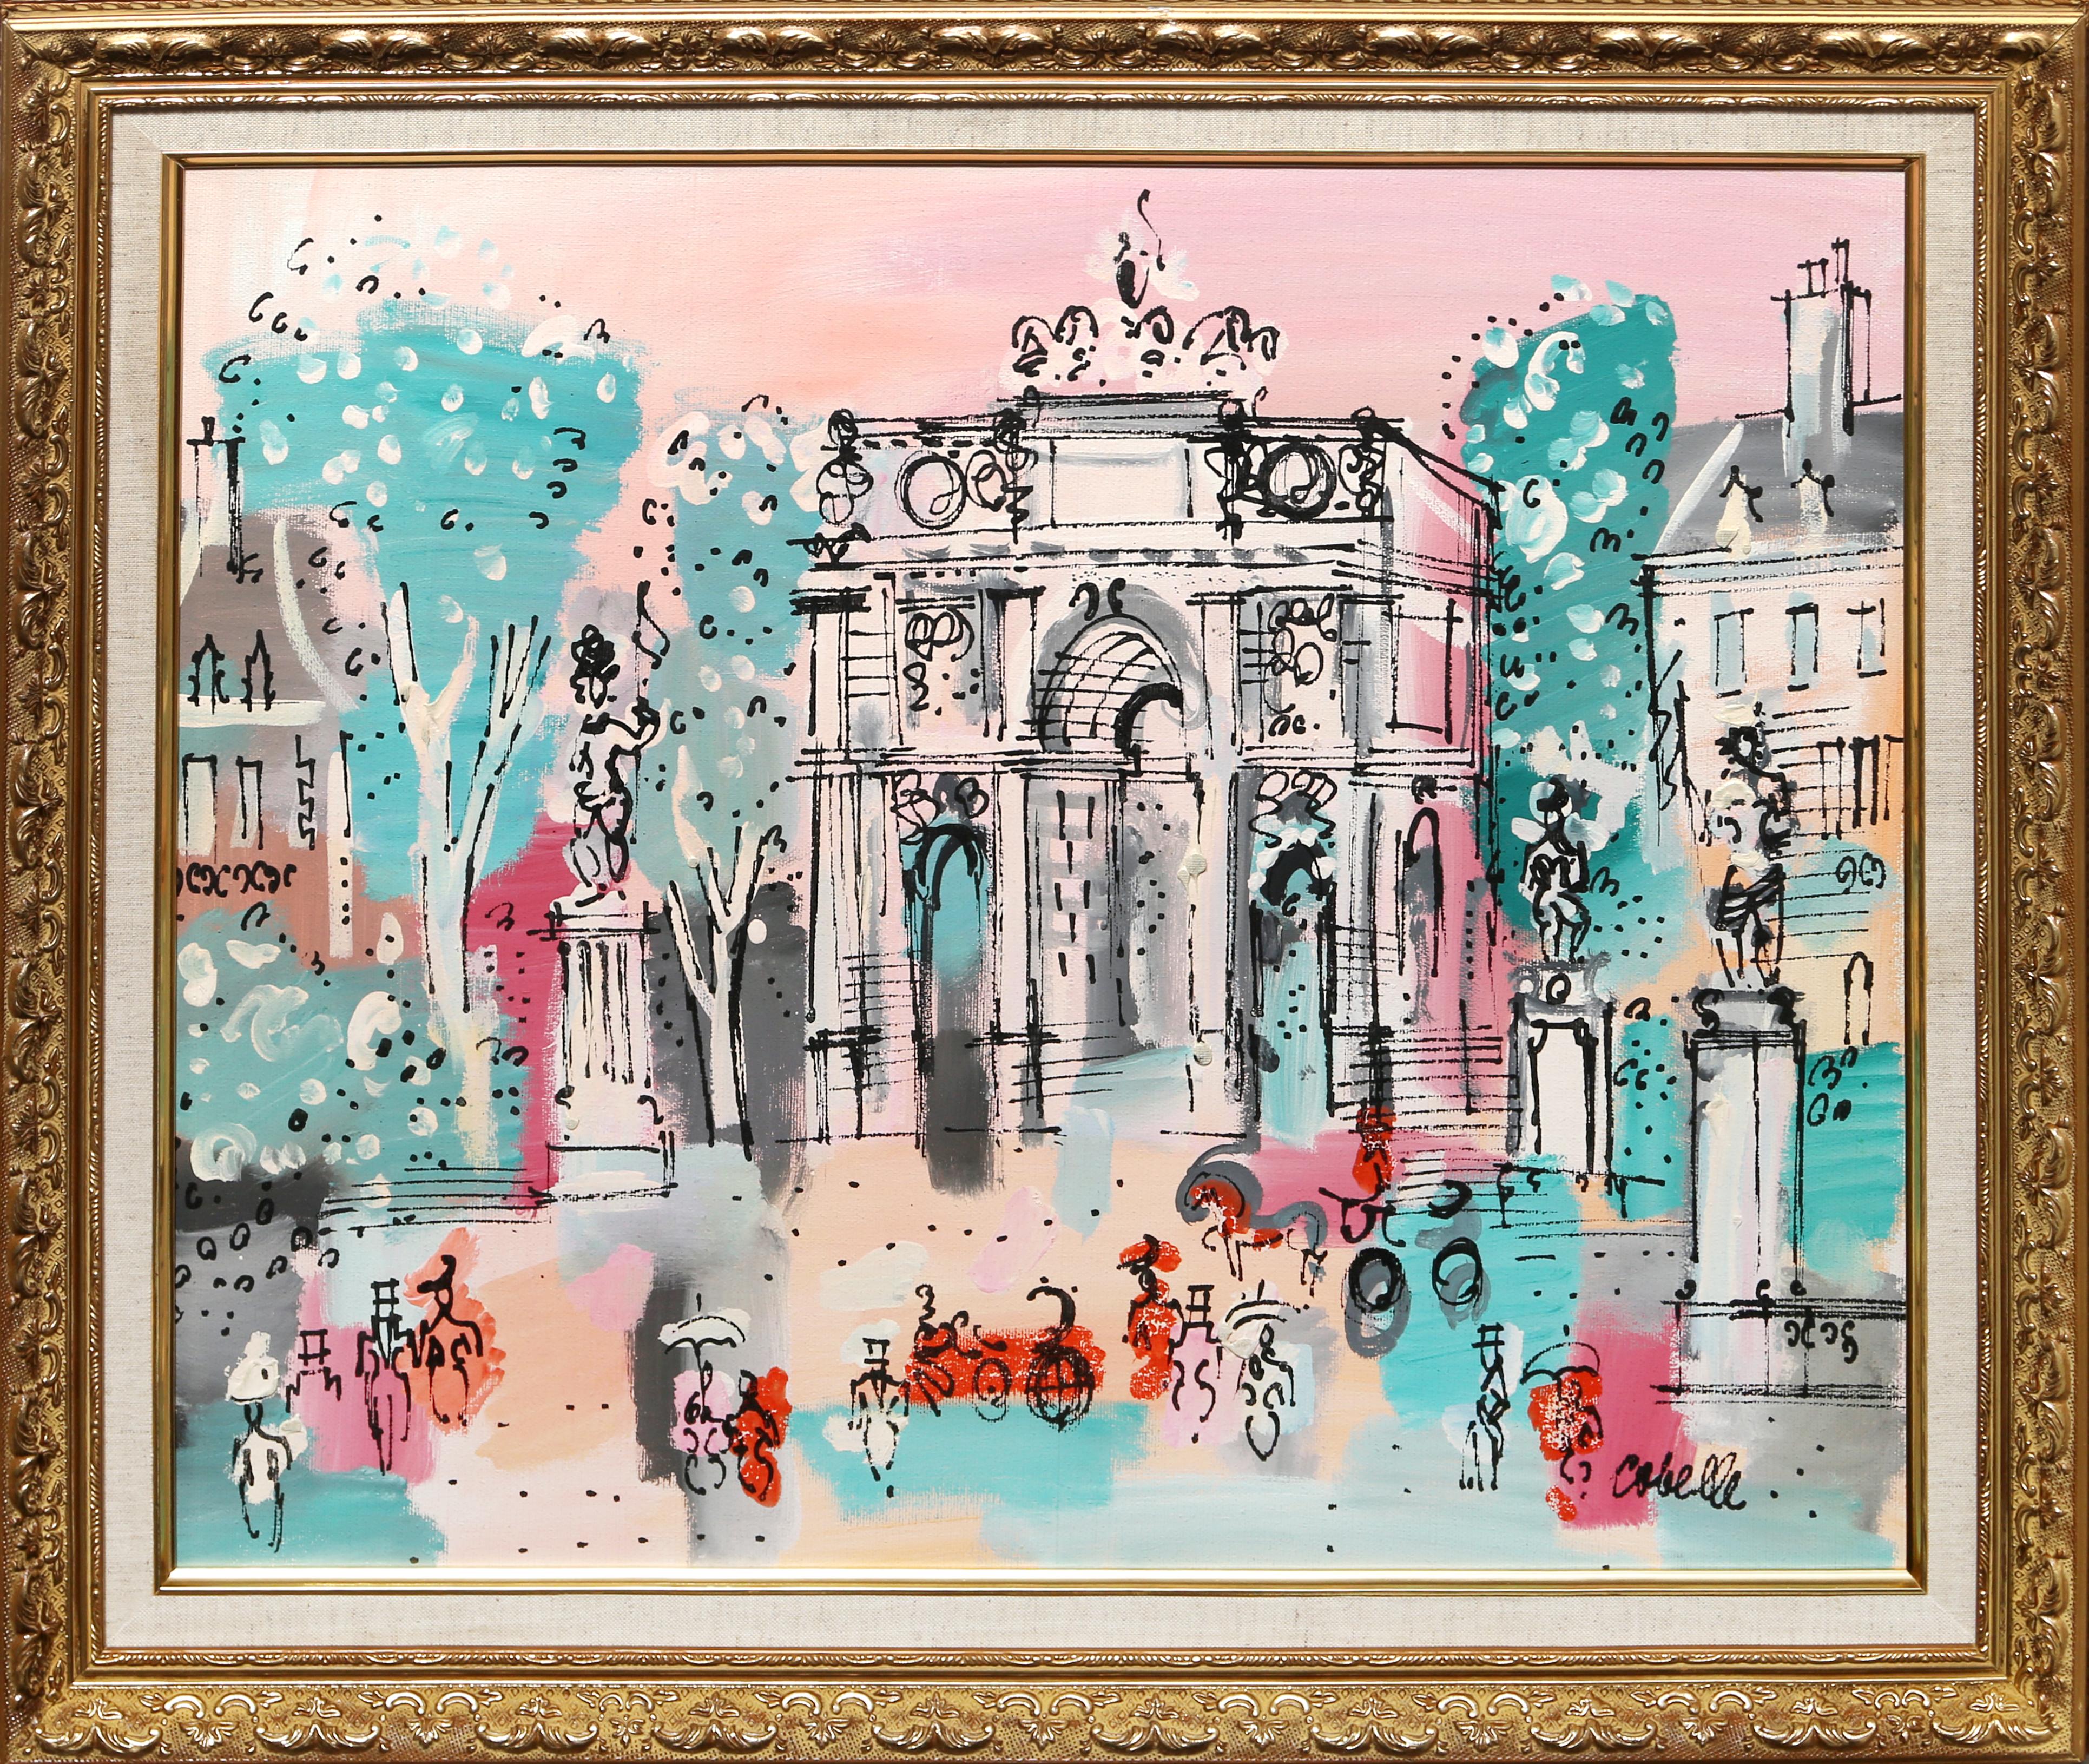 Ein helles und geschäftiges Pariser Stadtbild des französischen Künstlers Charles Cobelle, signiert unten rechts

Größe: 20 x 24 Zoll (50,8 x 60,96 cm)
Rahmengröße: 24,5 x 28,5 Zoll